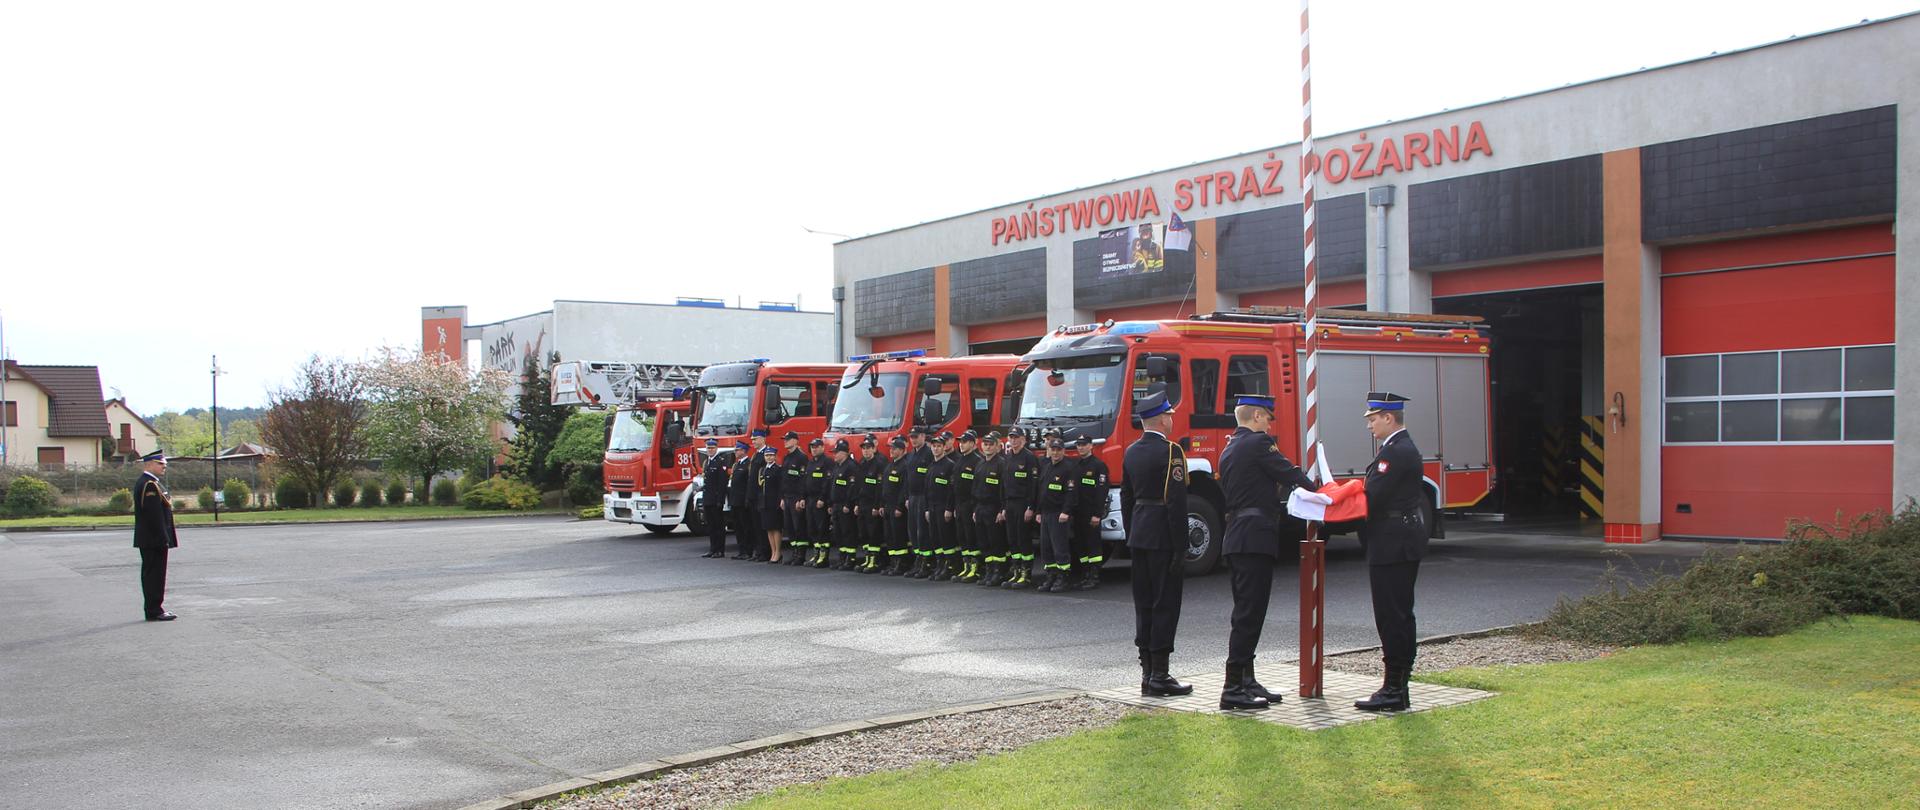 Trzech strażaków zawiesza Flagę Państwową na maszcie. Obok w szeregu stoją strażacy oraz samochody strażackie.